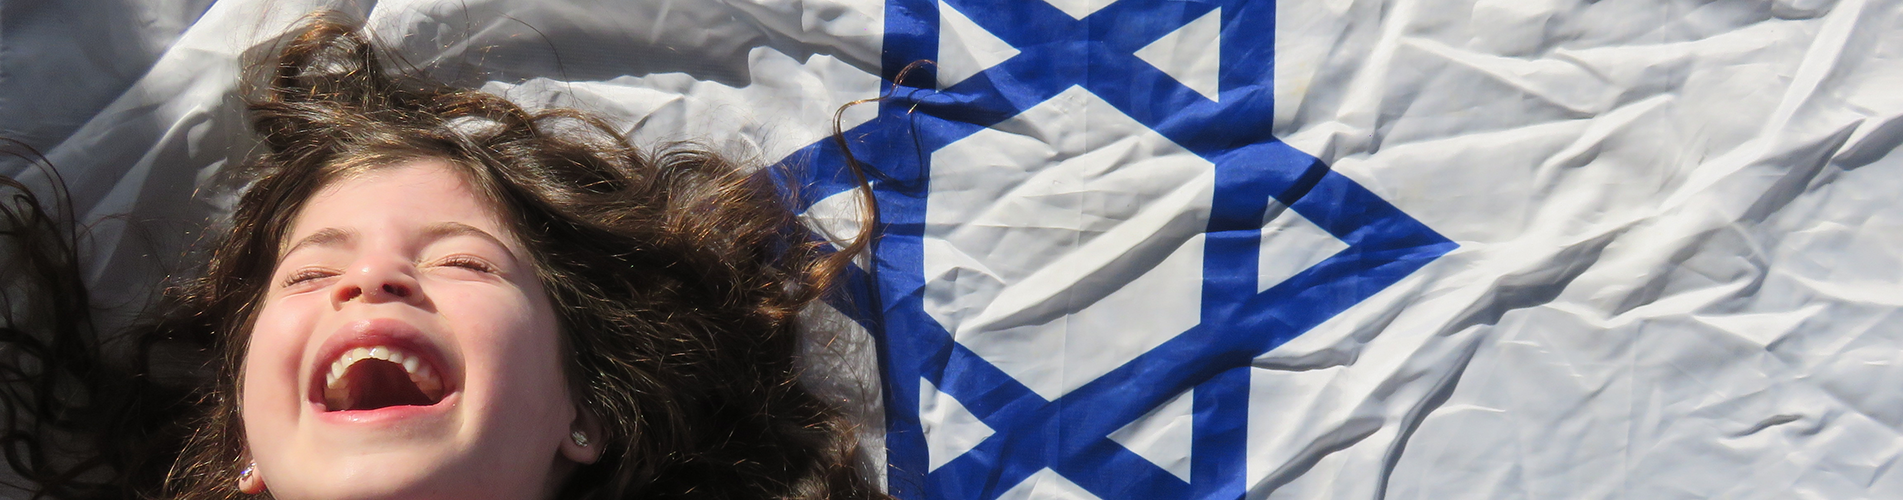 girl with an Israeli flag